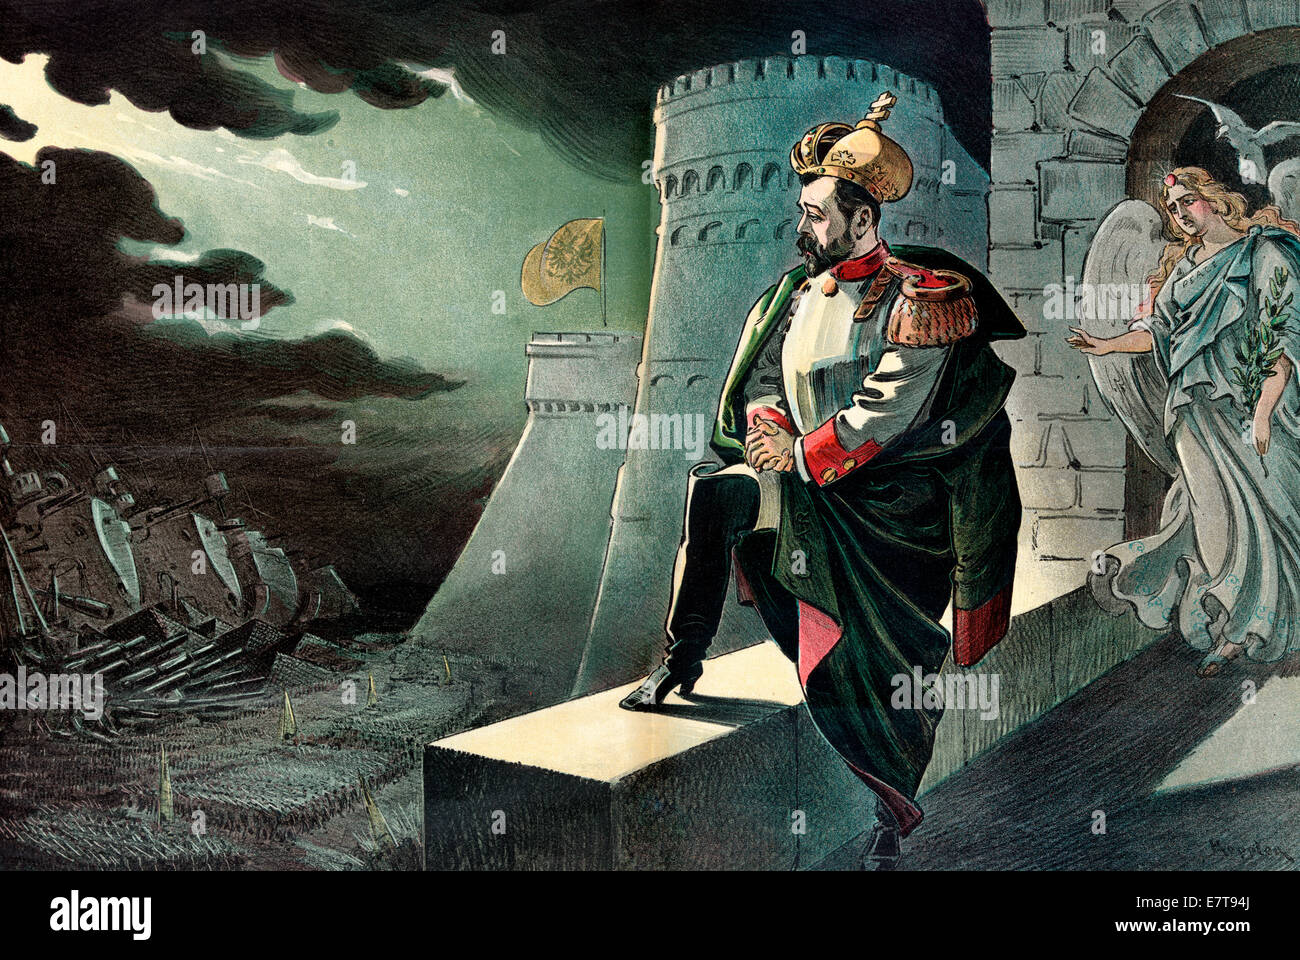 Delusione - Tsar Nicholas II, l'imperatore di Russia, in piedi su un parapetto su un castello, guardando verso il basso in corrispondenza di una massiccia raccolta esercito sotto le nuvole scure; una figura femminile etichettato 'pace' è in piedi dietro di lui, cercando in questione. Cartoon politico, 1899 Foto Stock